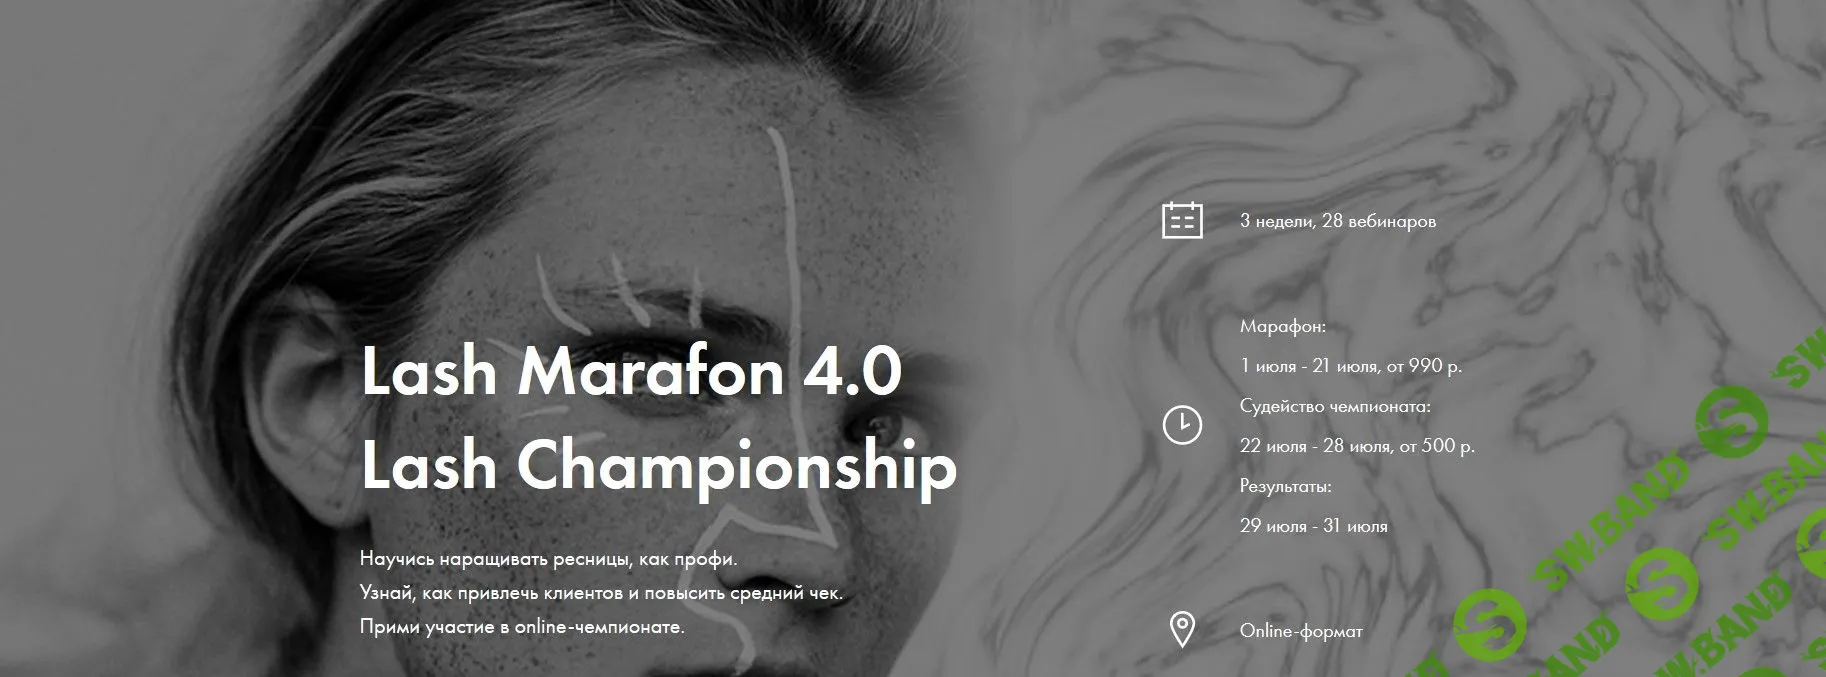 Lash Marafon 4.0 Lash Championship (2019)